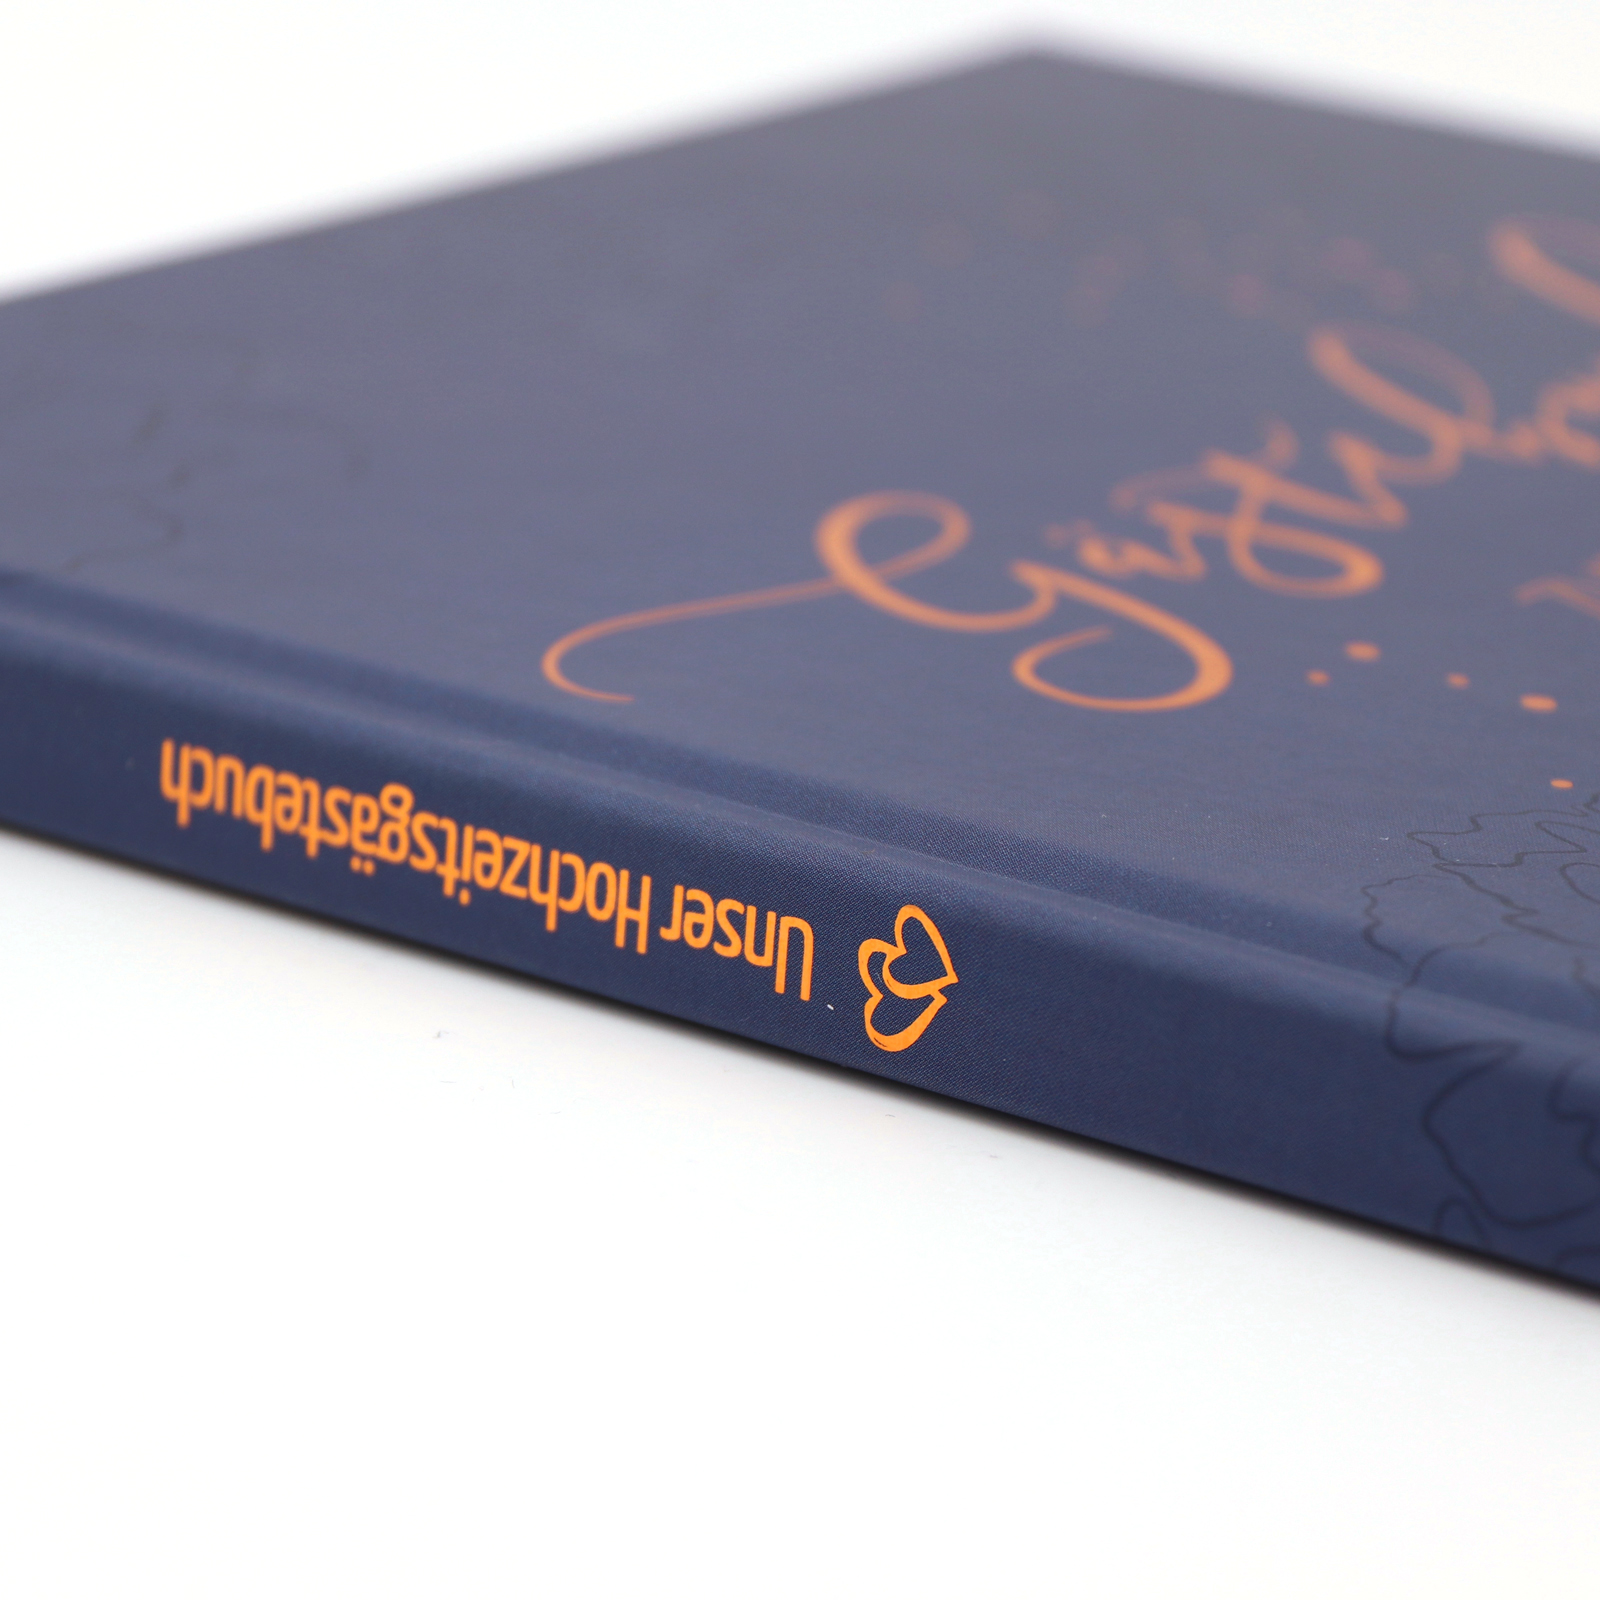 Gästebuch Hochzeit mit Fragen >Blühendes Kupfer< Heissfolie - Hardcover + Fadenheftung - 120 Seiten